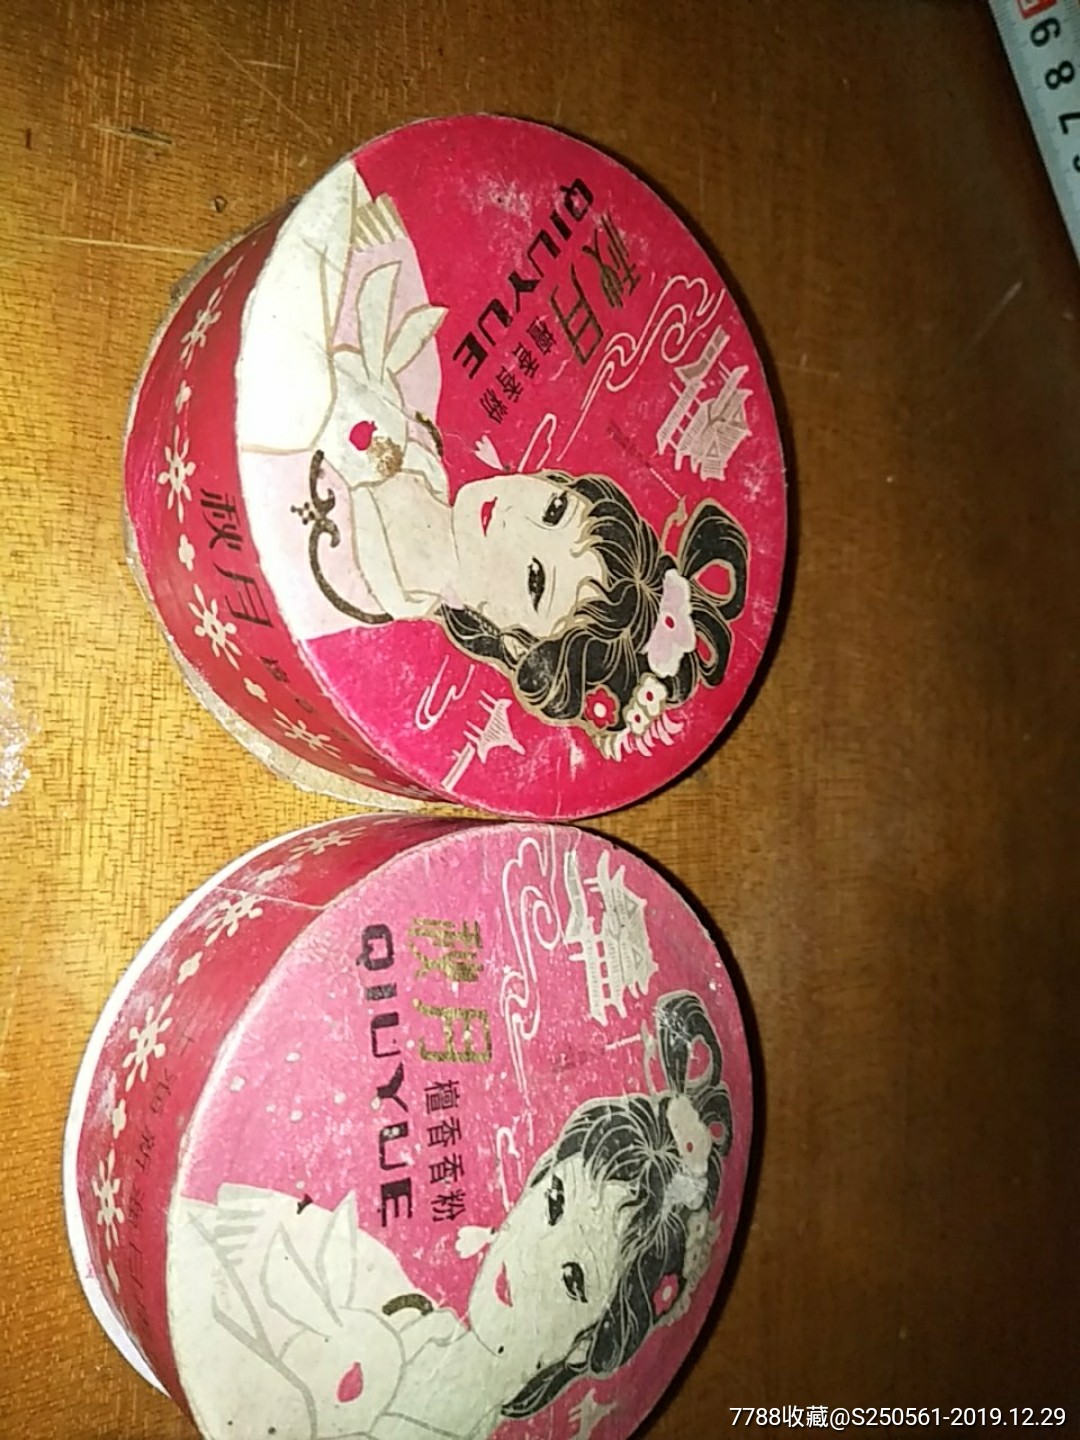 上海秋月檀香粉胭脂盒一对其中一个有烟粉-价格:25元-se70422699-老